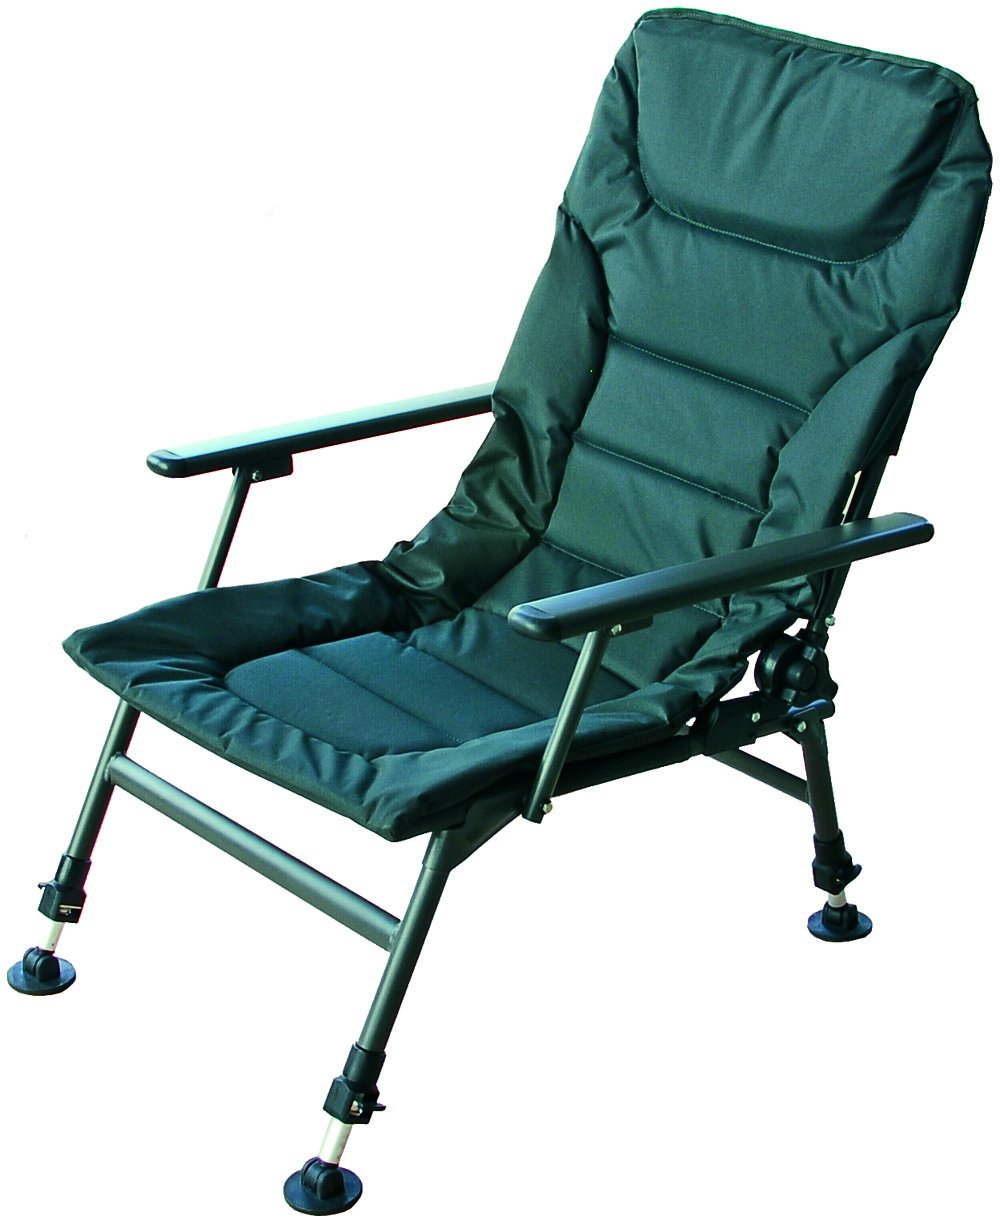 Кресло туристическое подлокотниками. Кресло Green Days ytmc010l. Туристическое кресло CW Commander. Кресло туристическое Спортмастер. Aviator support Chair складное кресло.